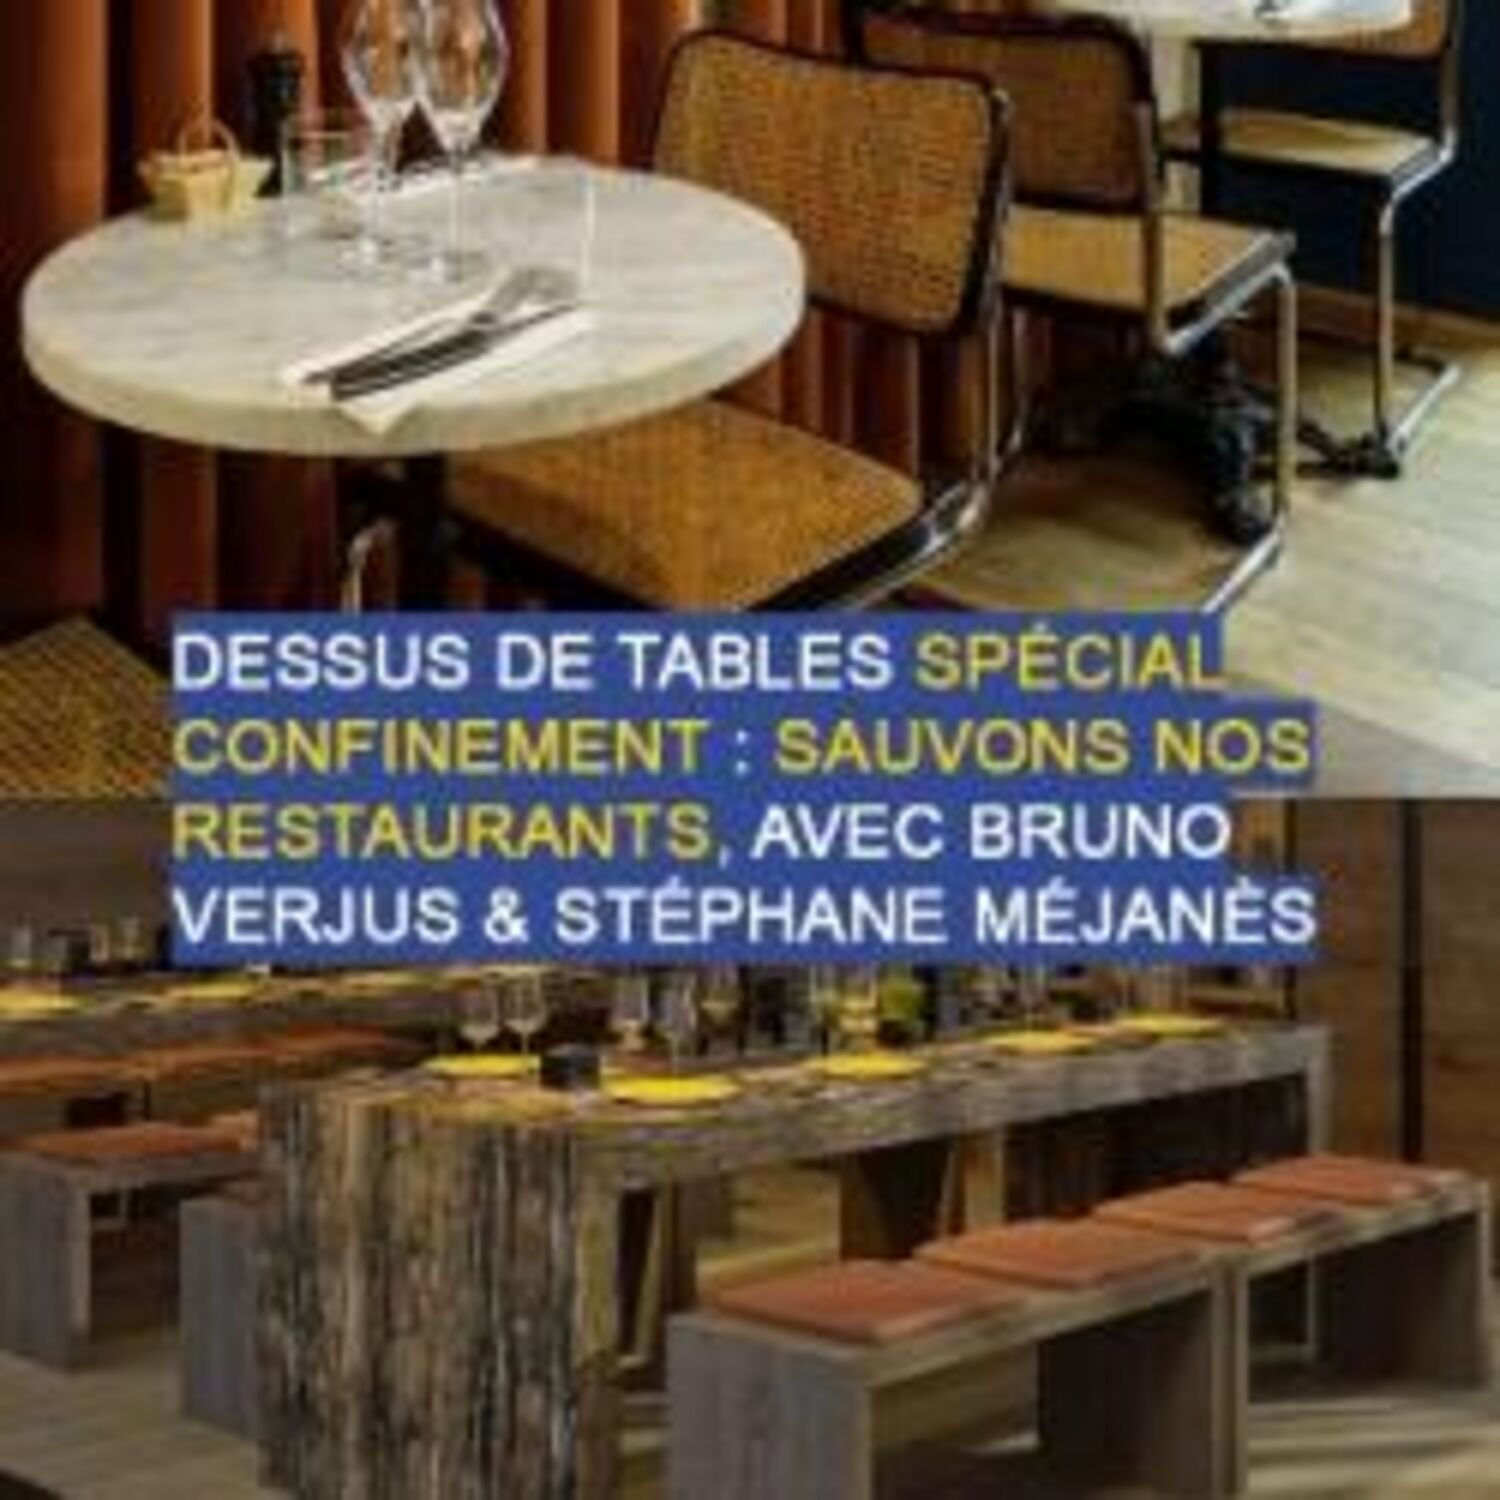 Dessus de tables du 31-10-2020 : Sauvons nos restaurants